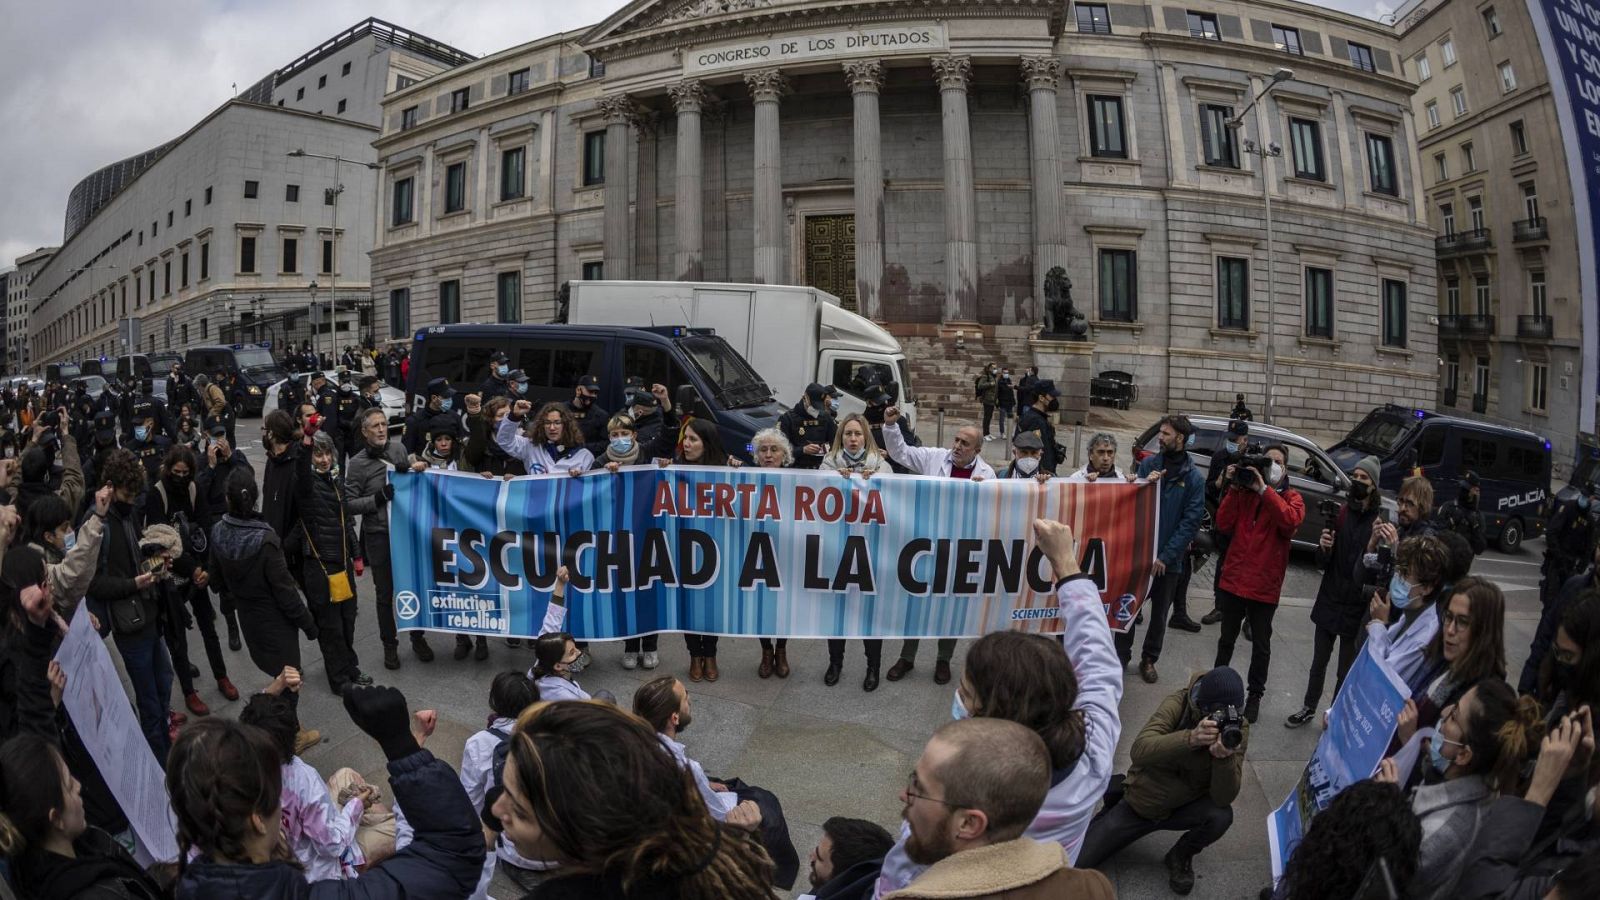 24 horas - Mauricio Misquero, portavoz de Rebelión Científica: "No se está alertando a la gente de que su vida está en peligro" - Escuchar ahora 